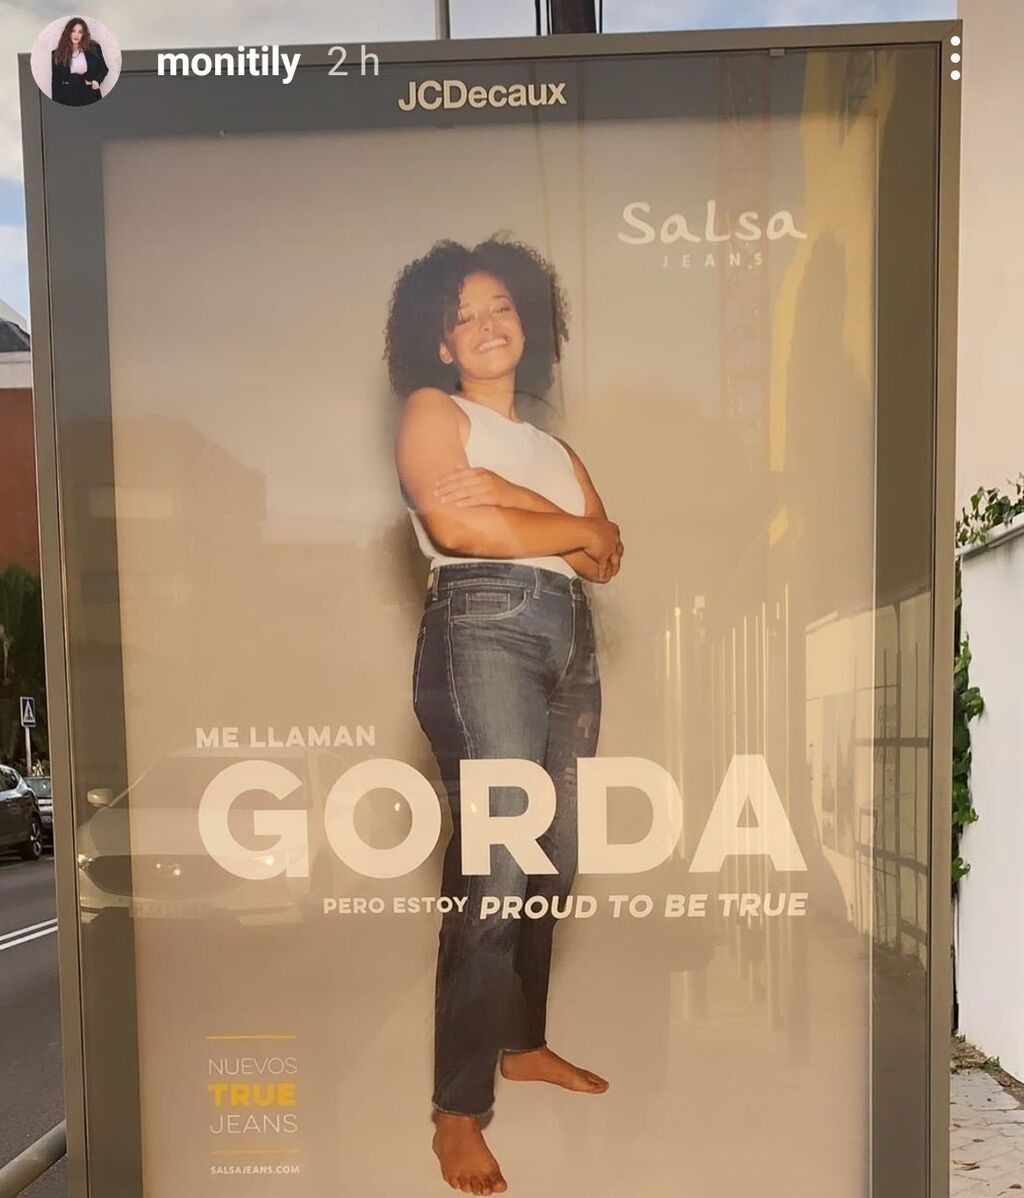 Me llaman GORDA, pero estoy proud to be